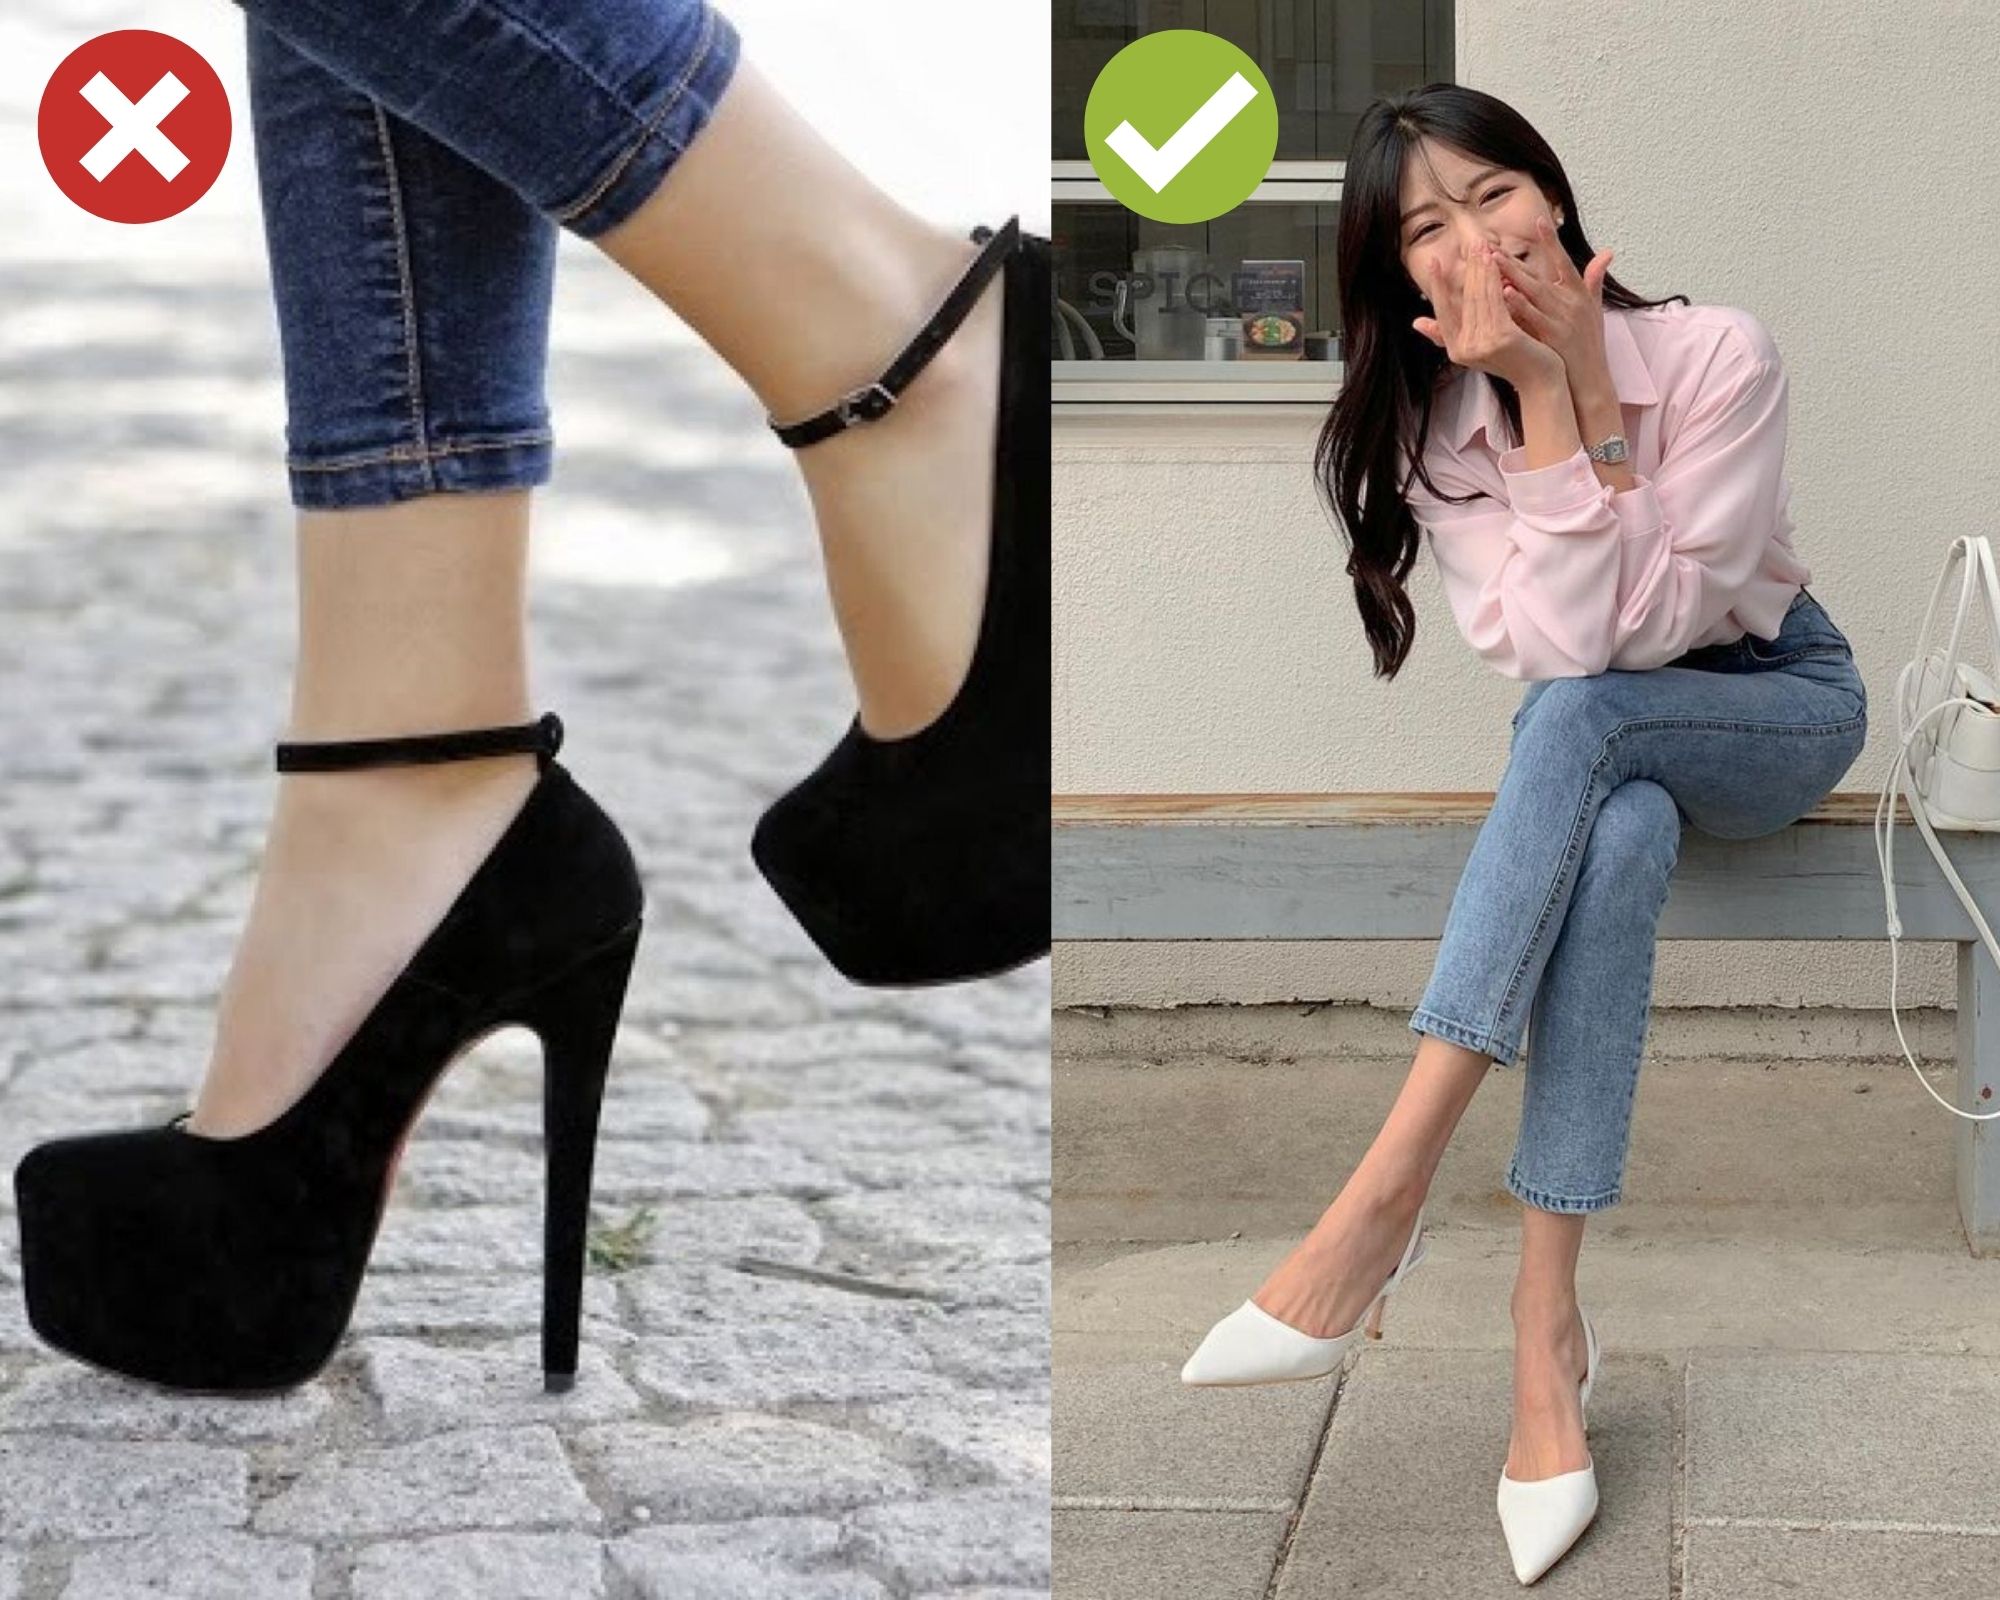 Những đôi giày dép sành điệu sẽ làm hài lòng những cô nàng yêu thích thử thách mọi thứ mới. Với hình ảnh tuyệt đẹp từ các nhà thiết kế hàng đầu, bạn có thể tìm thấy được những mẫu giày dép sành điệu, năng động và tinh tế nhất.